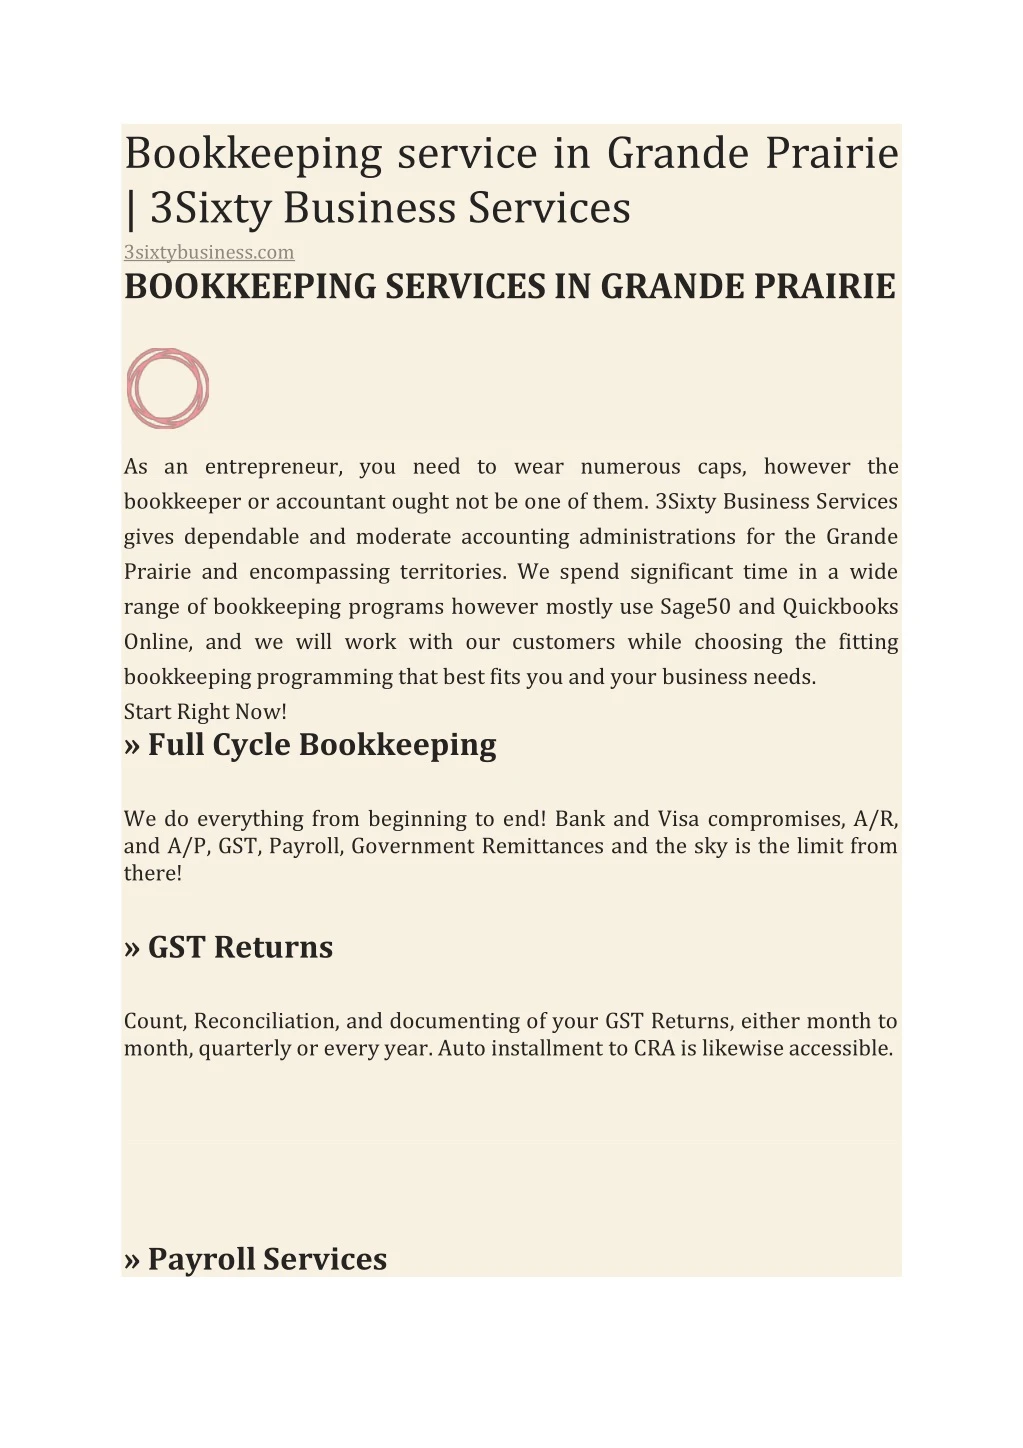 bookkeeping service in grande prairie 3sixty